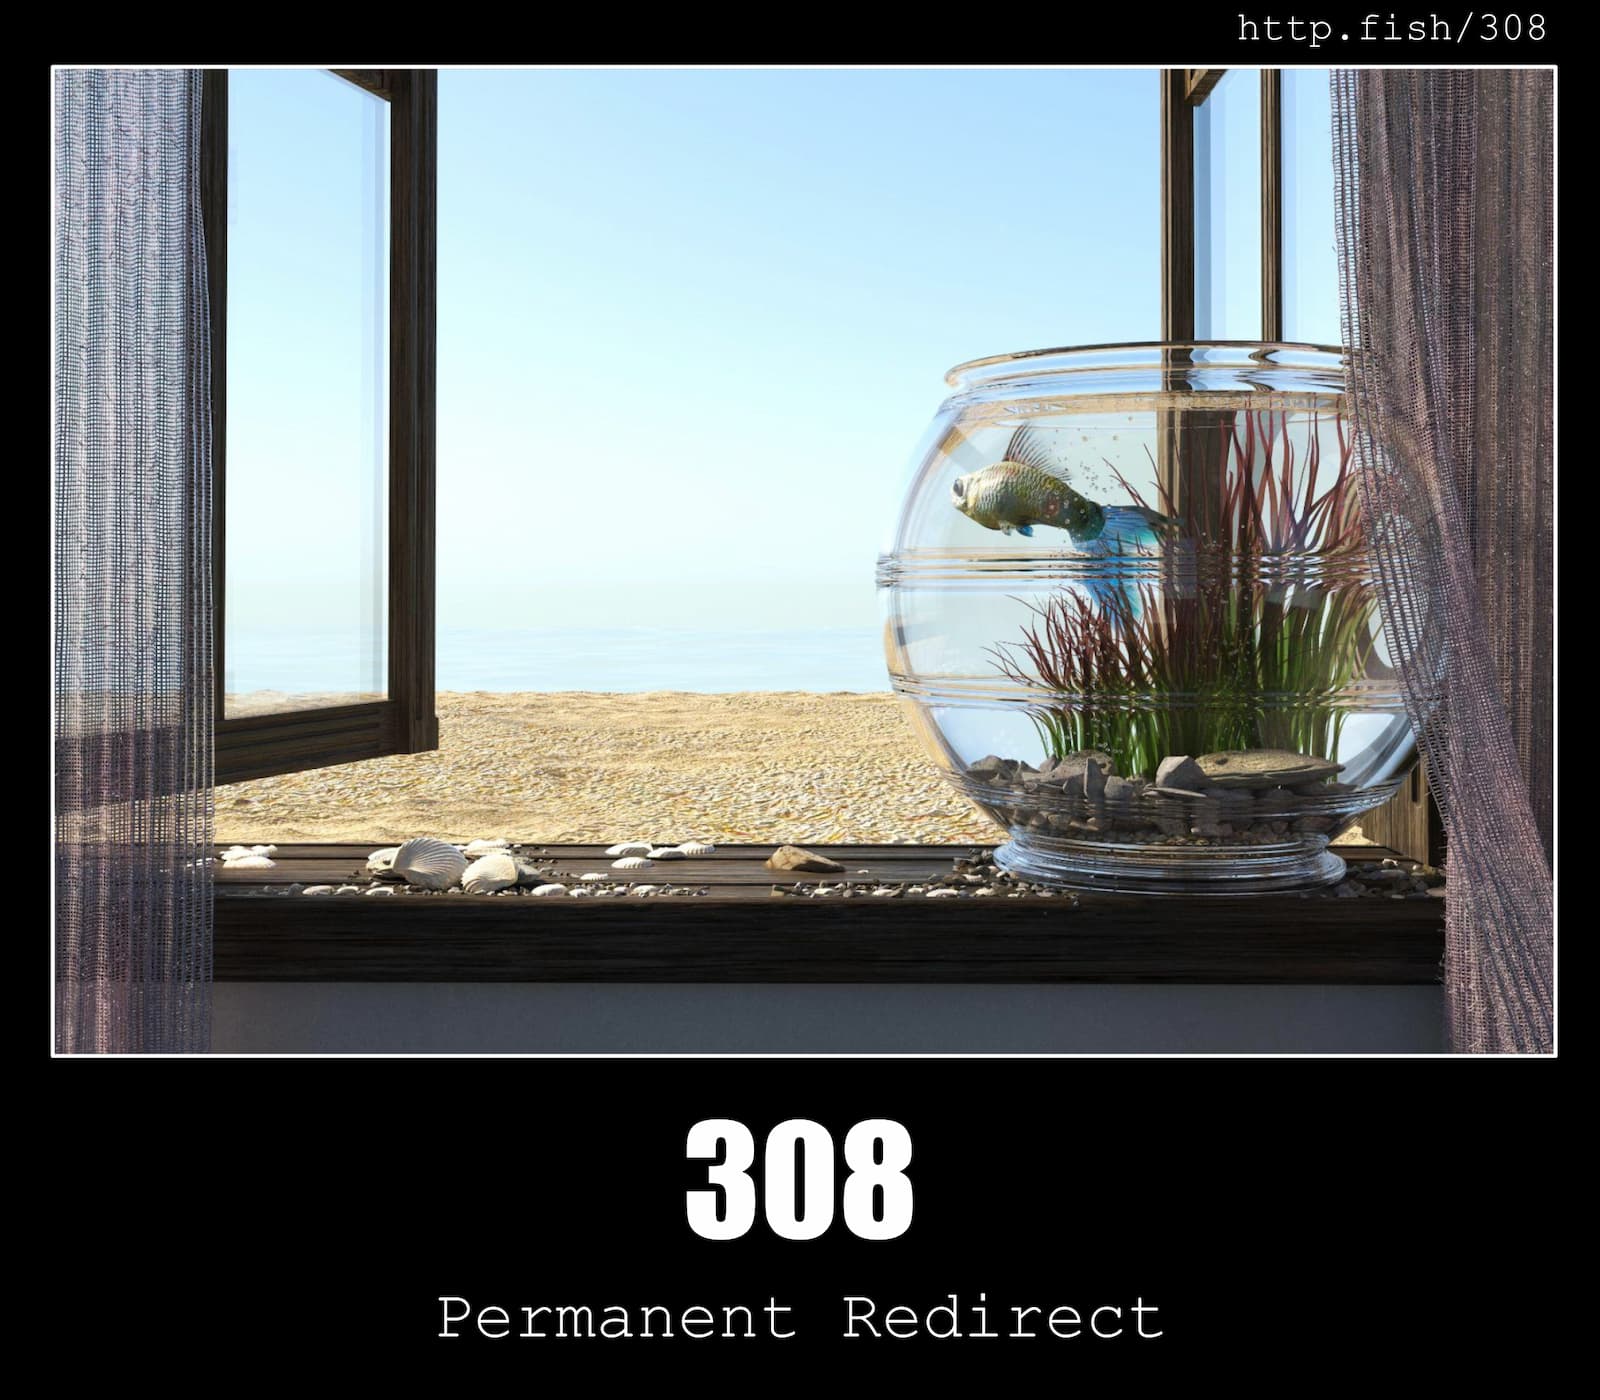 HTTP Status Code 308 Permanent Redirect & Fish